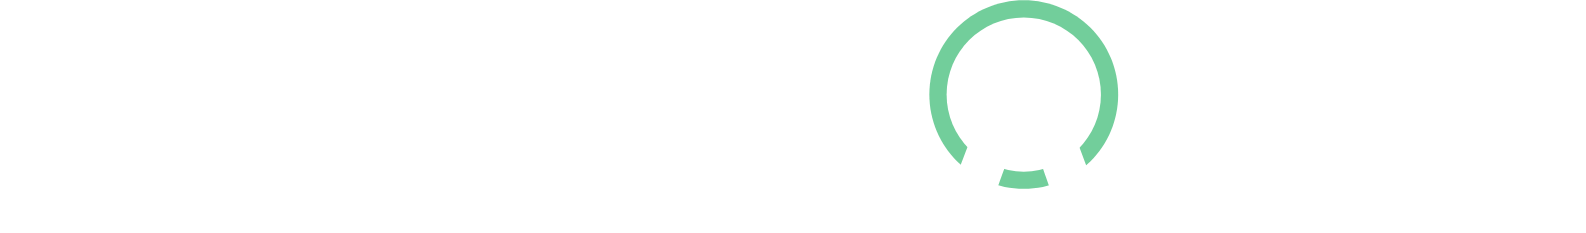 Medpace logo large for dark backgrounds (transparent PNG)